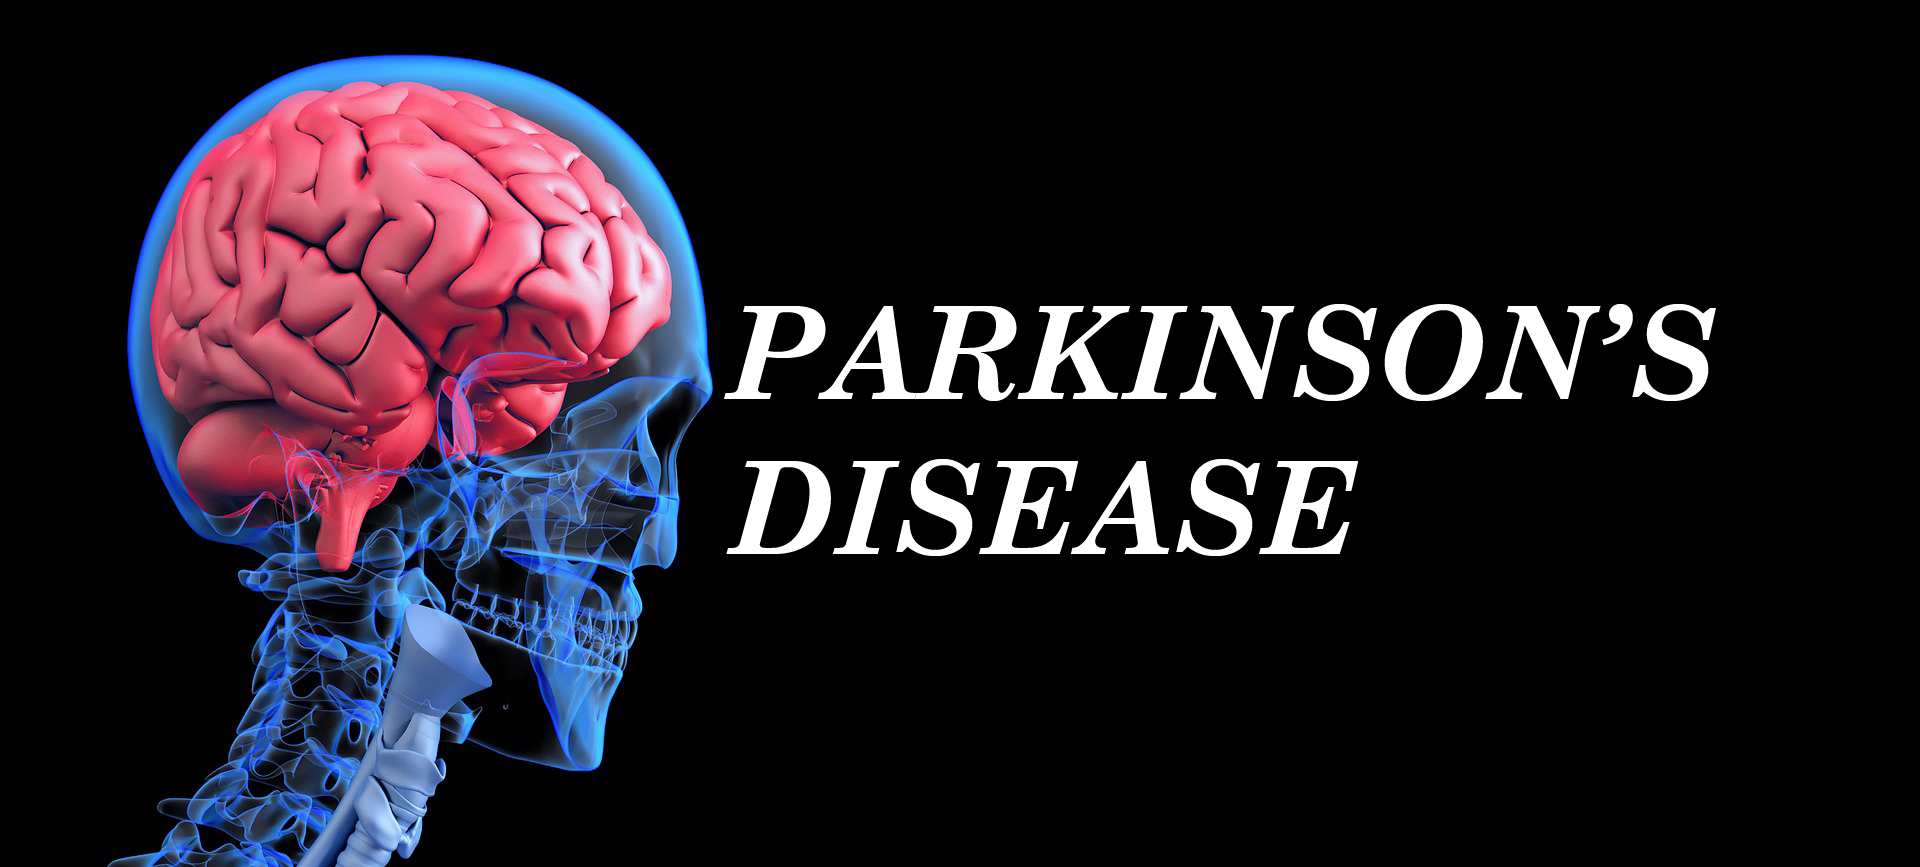 Parkinson's Disease Market